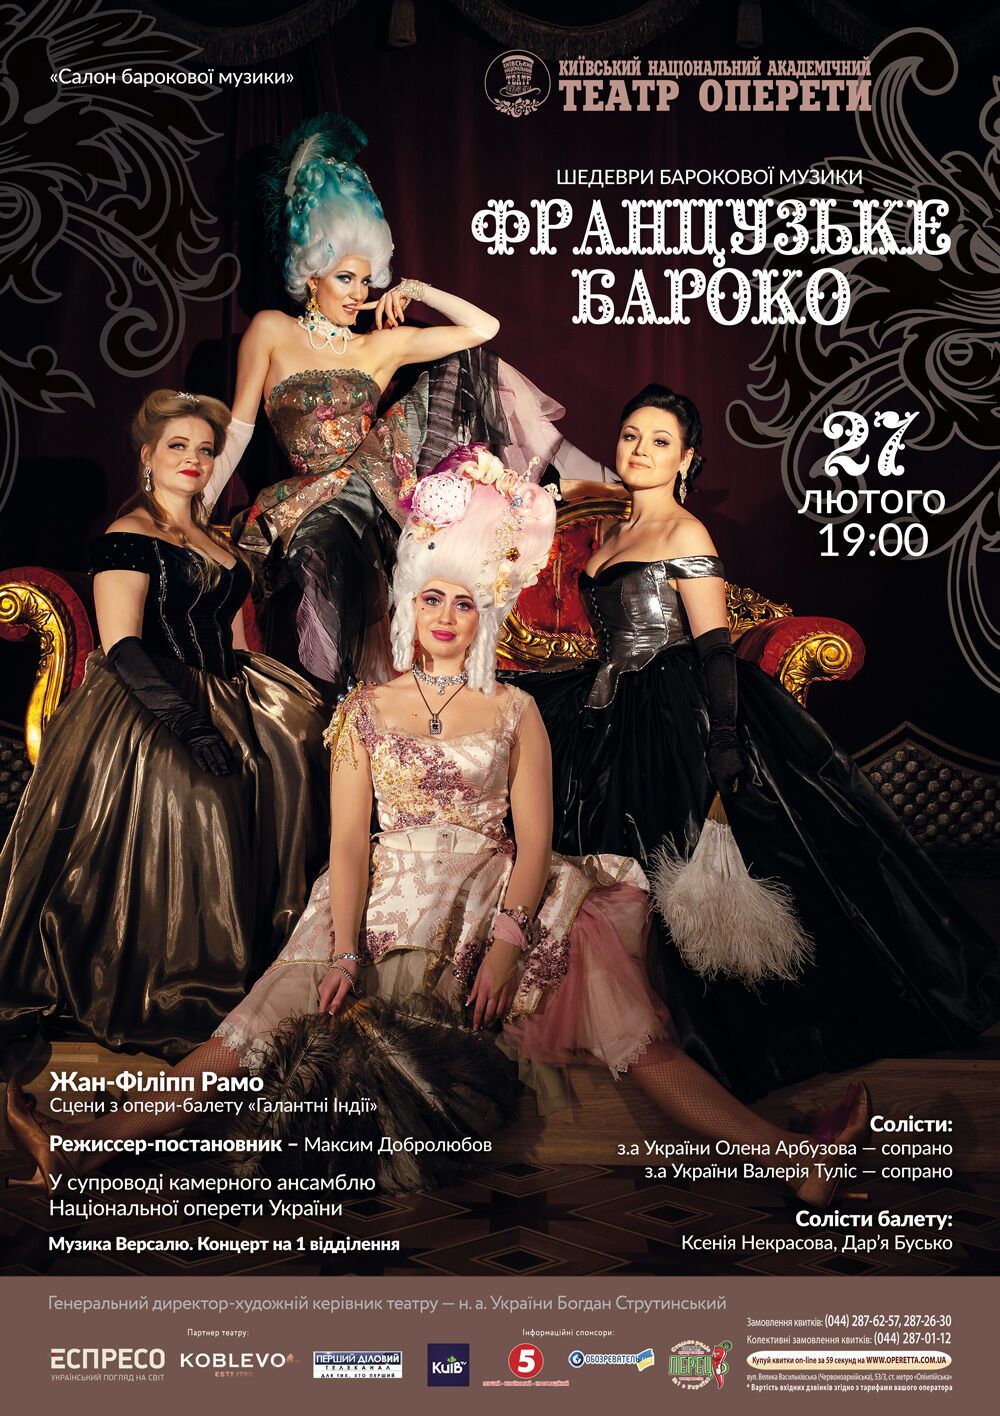 "Шедеври барокової музики. Французьке бароко" покажуть у Національній опереті України